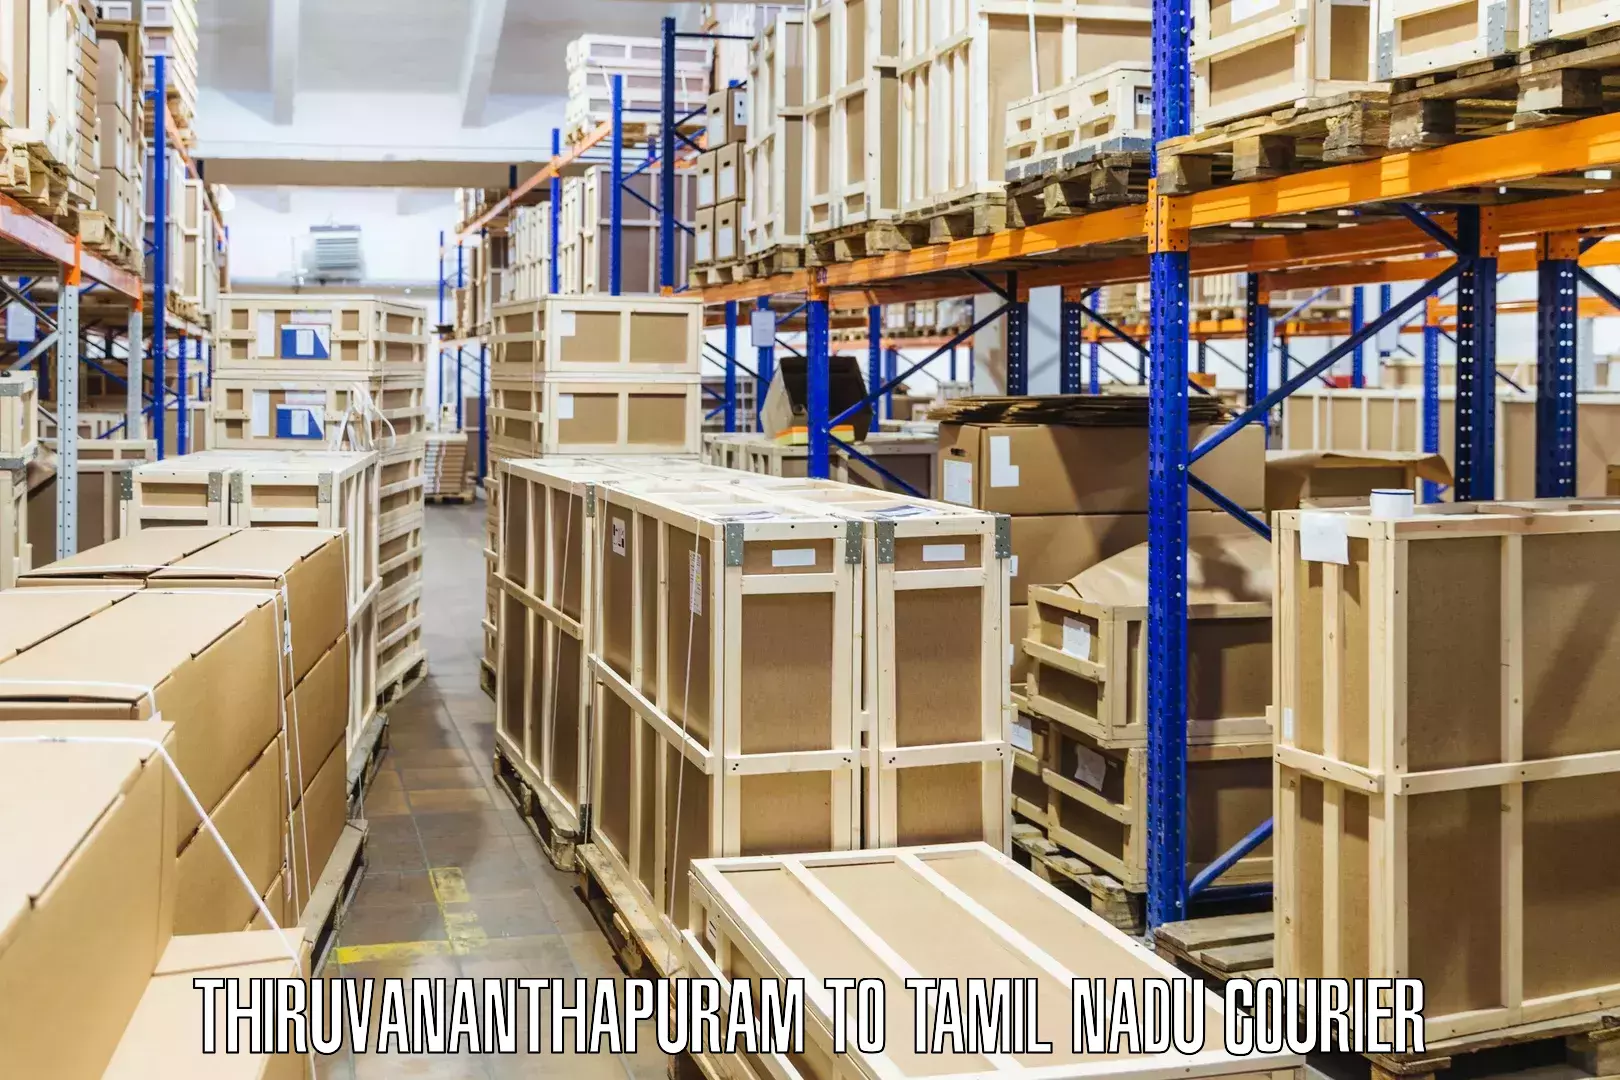 Global courier networks Thiruvananthapuram to Orathanadu